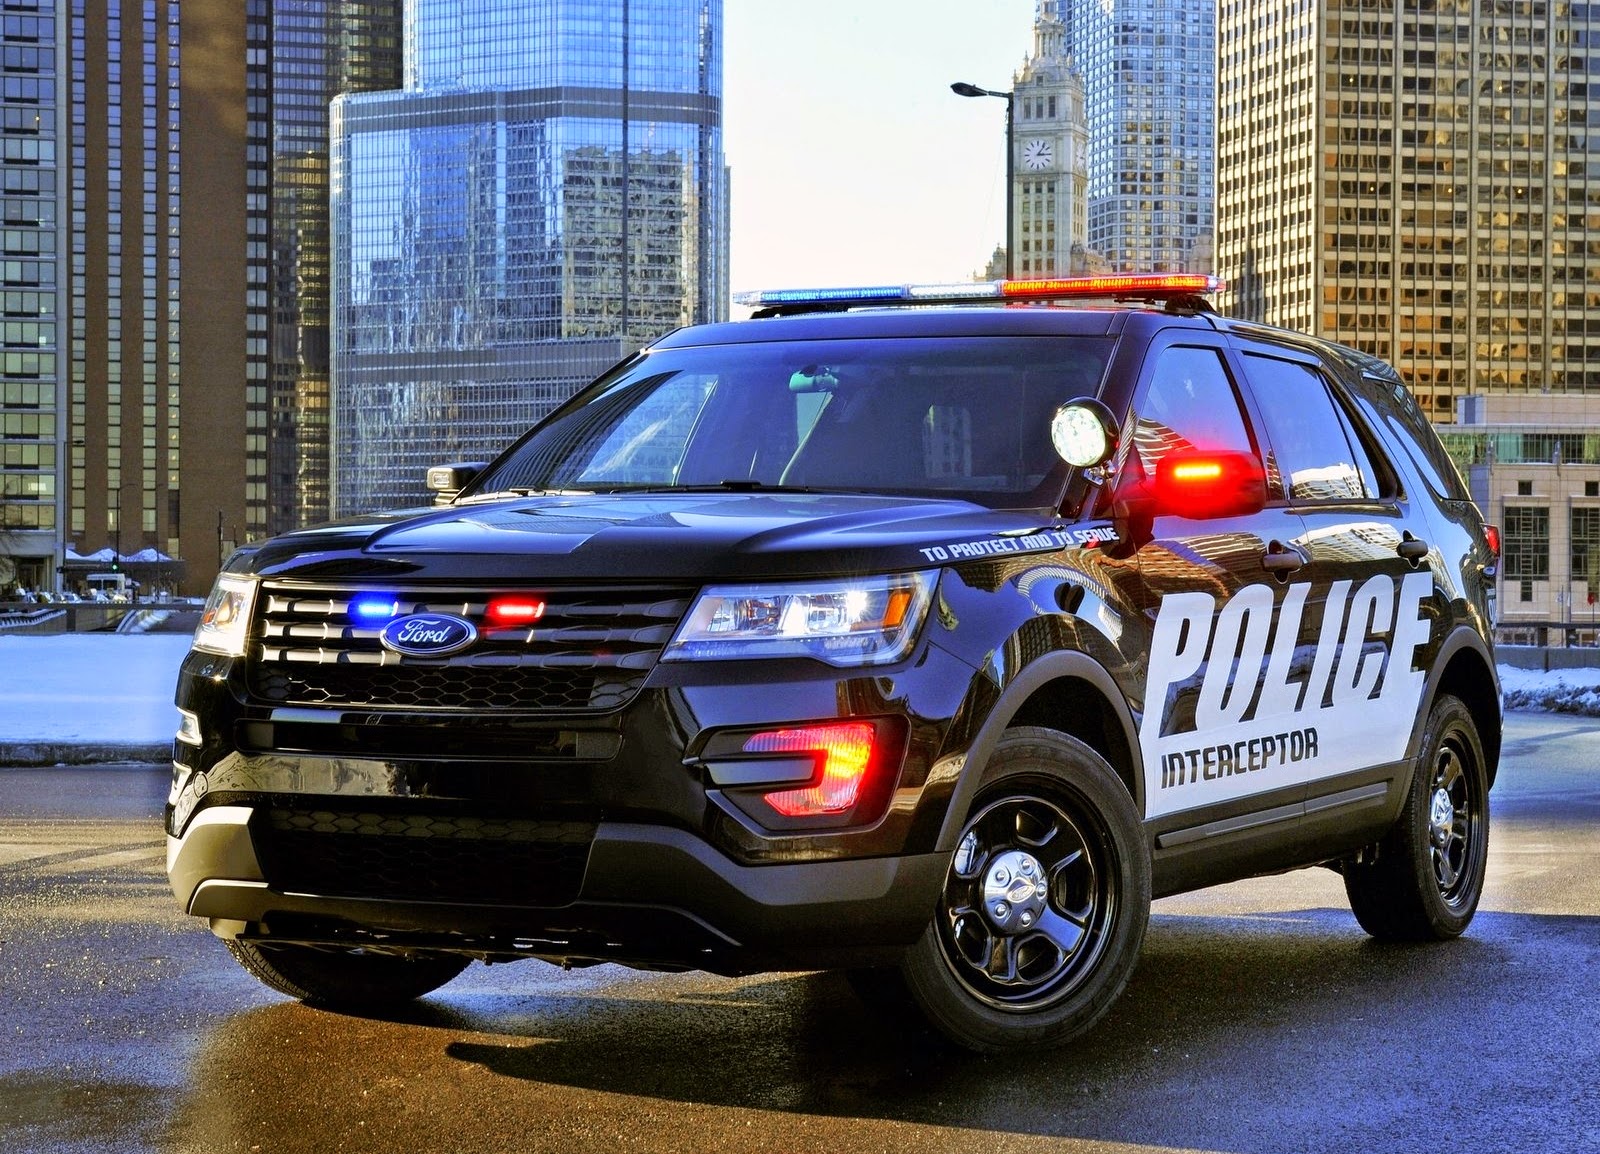 Hdcarwallpaper Fordpoliceinterceptor - Police Cars Fords - HD Wallpaper 